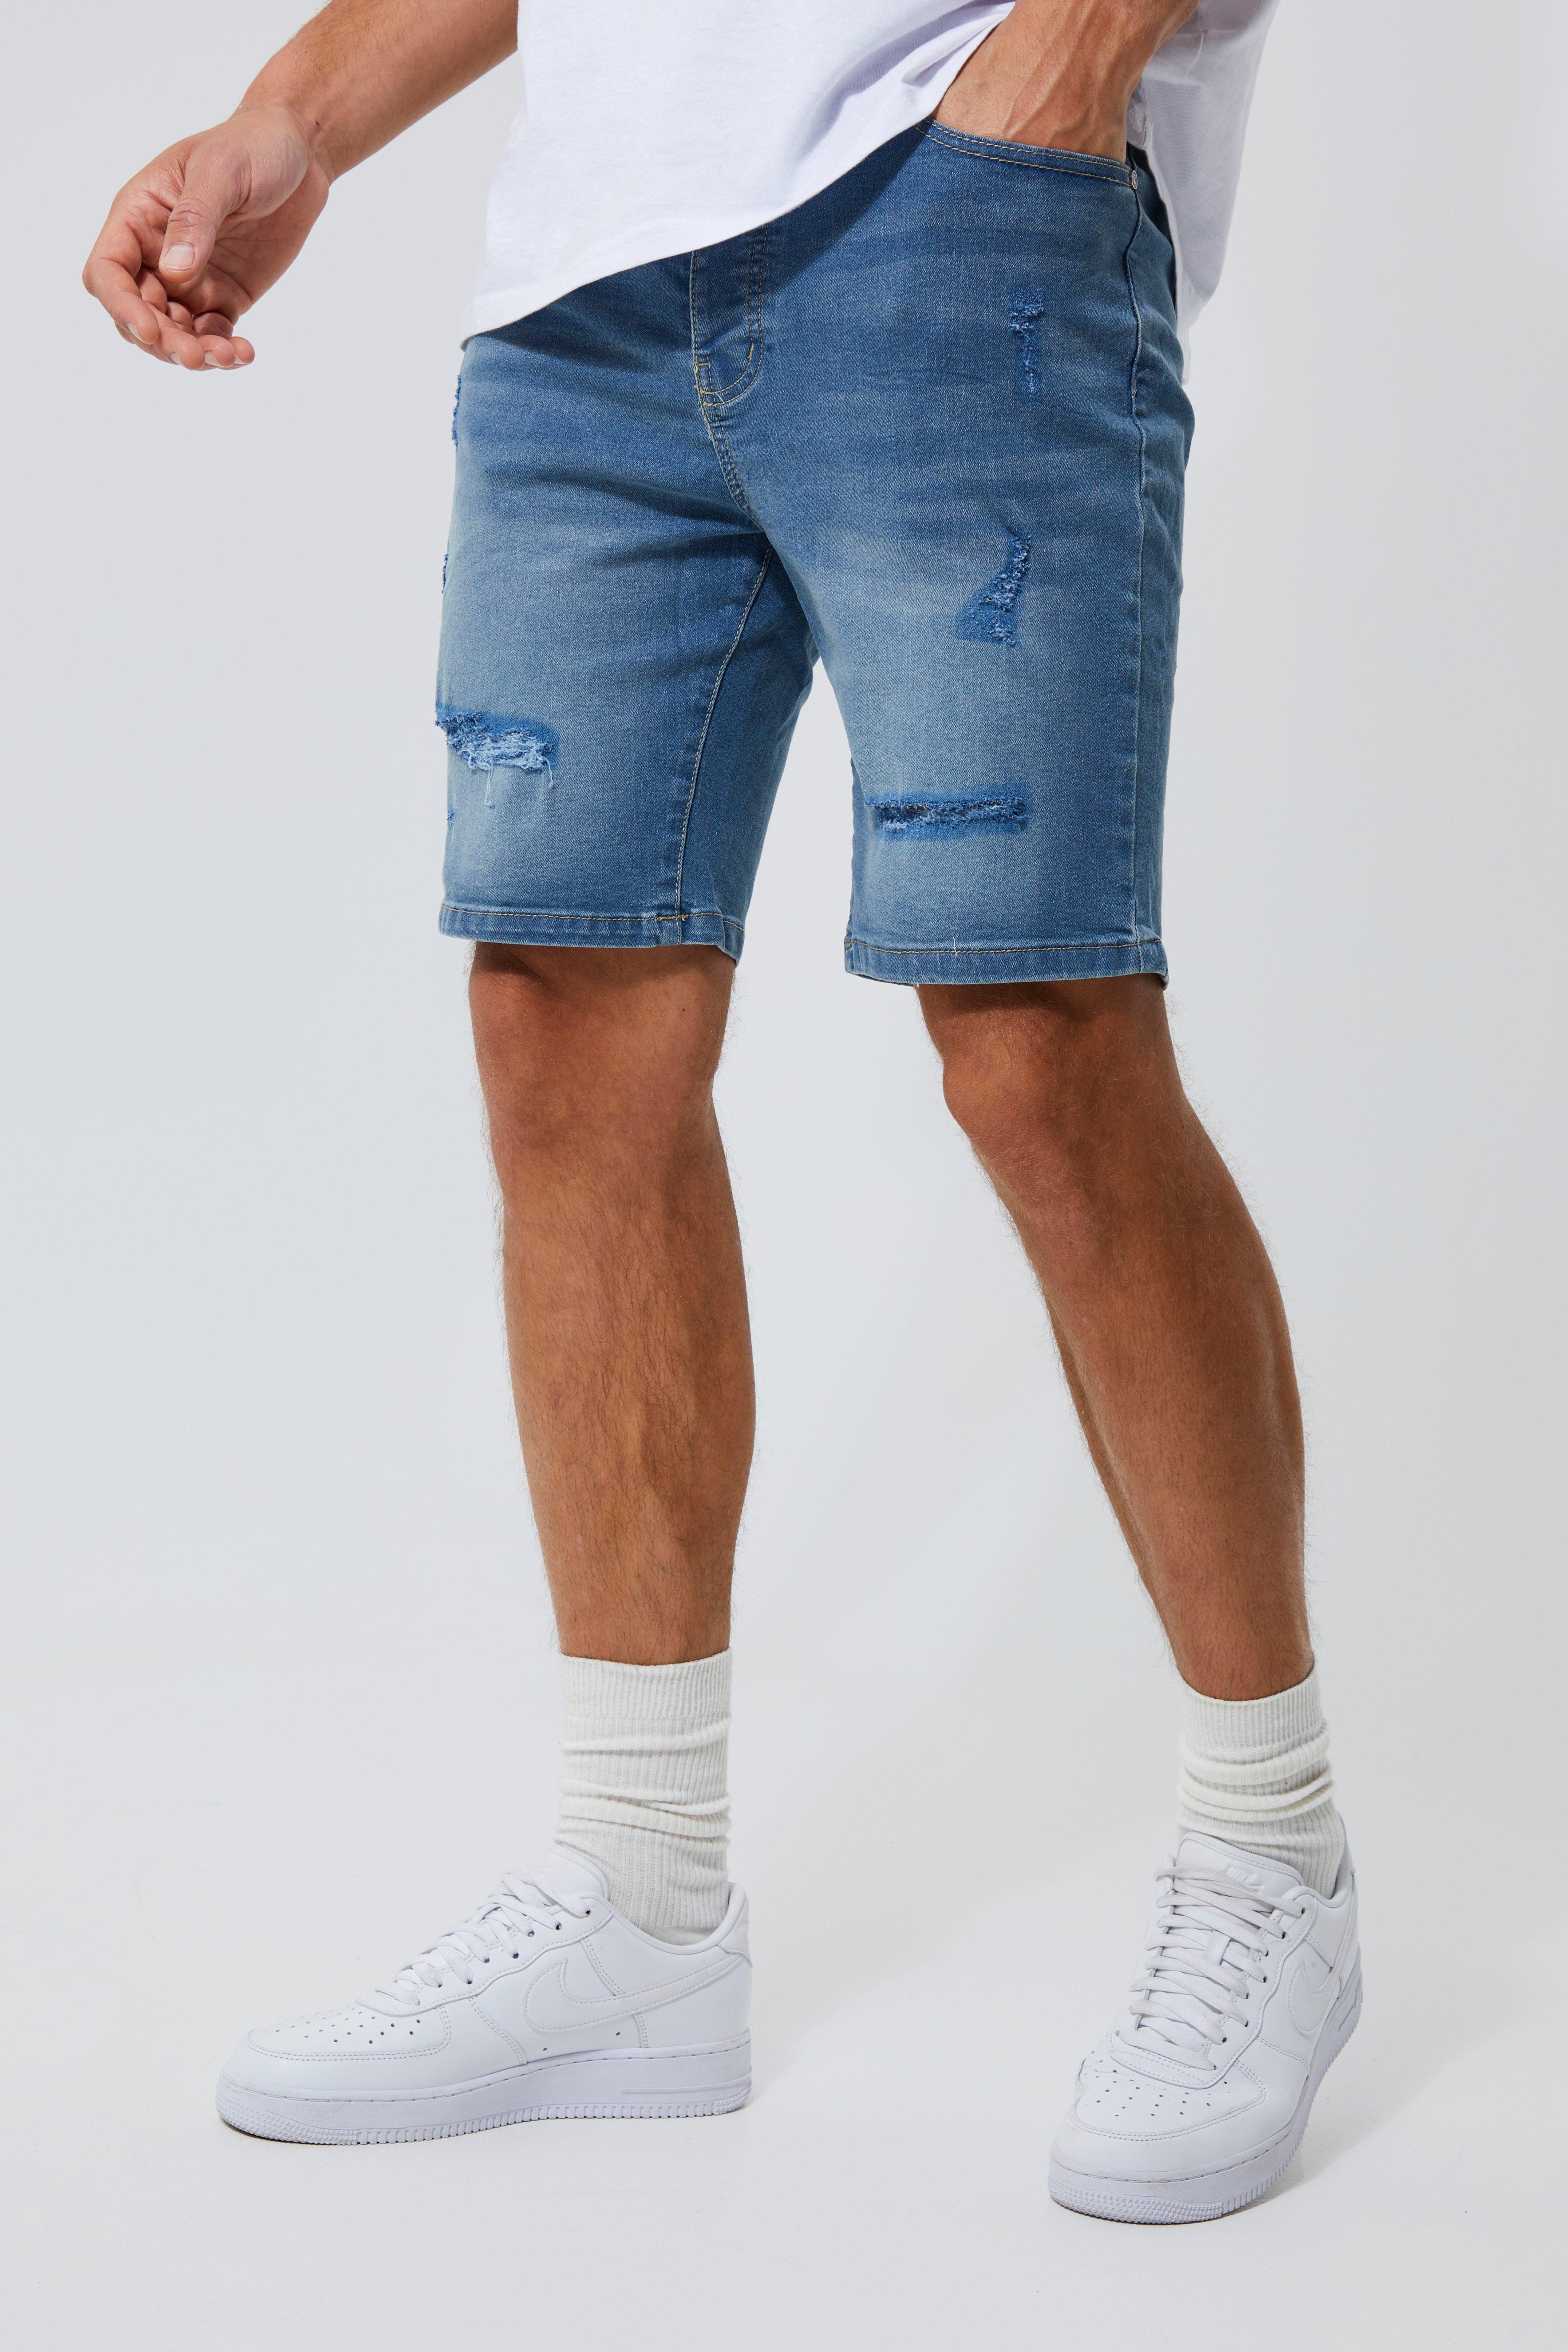 tall - short en jean déchiré homme - bleu - 30, bleu